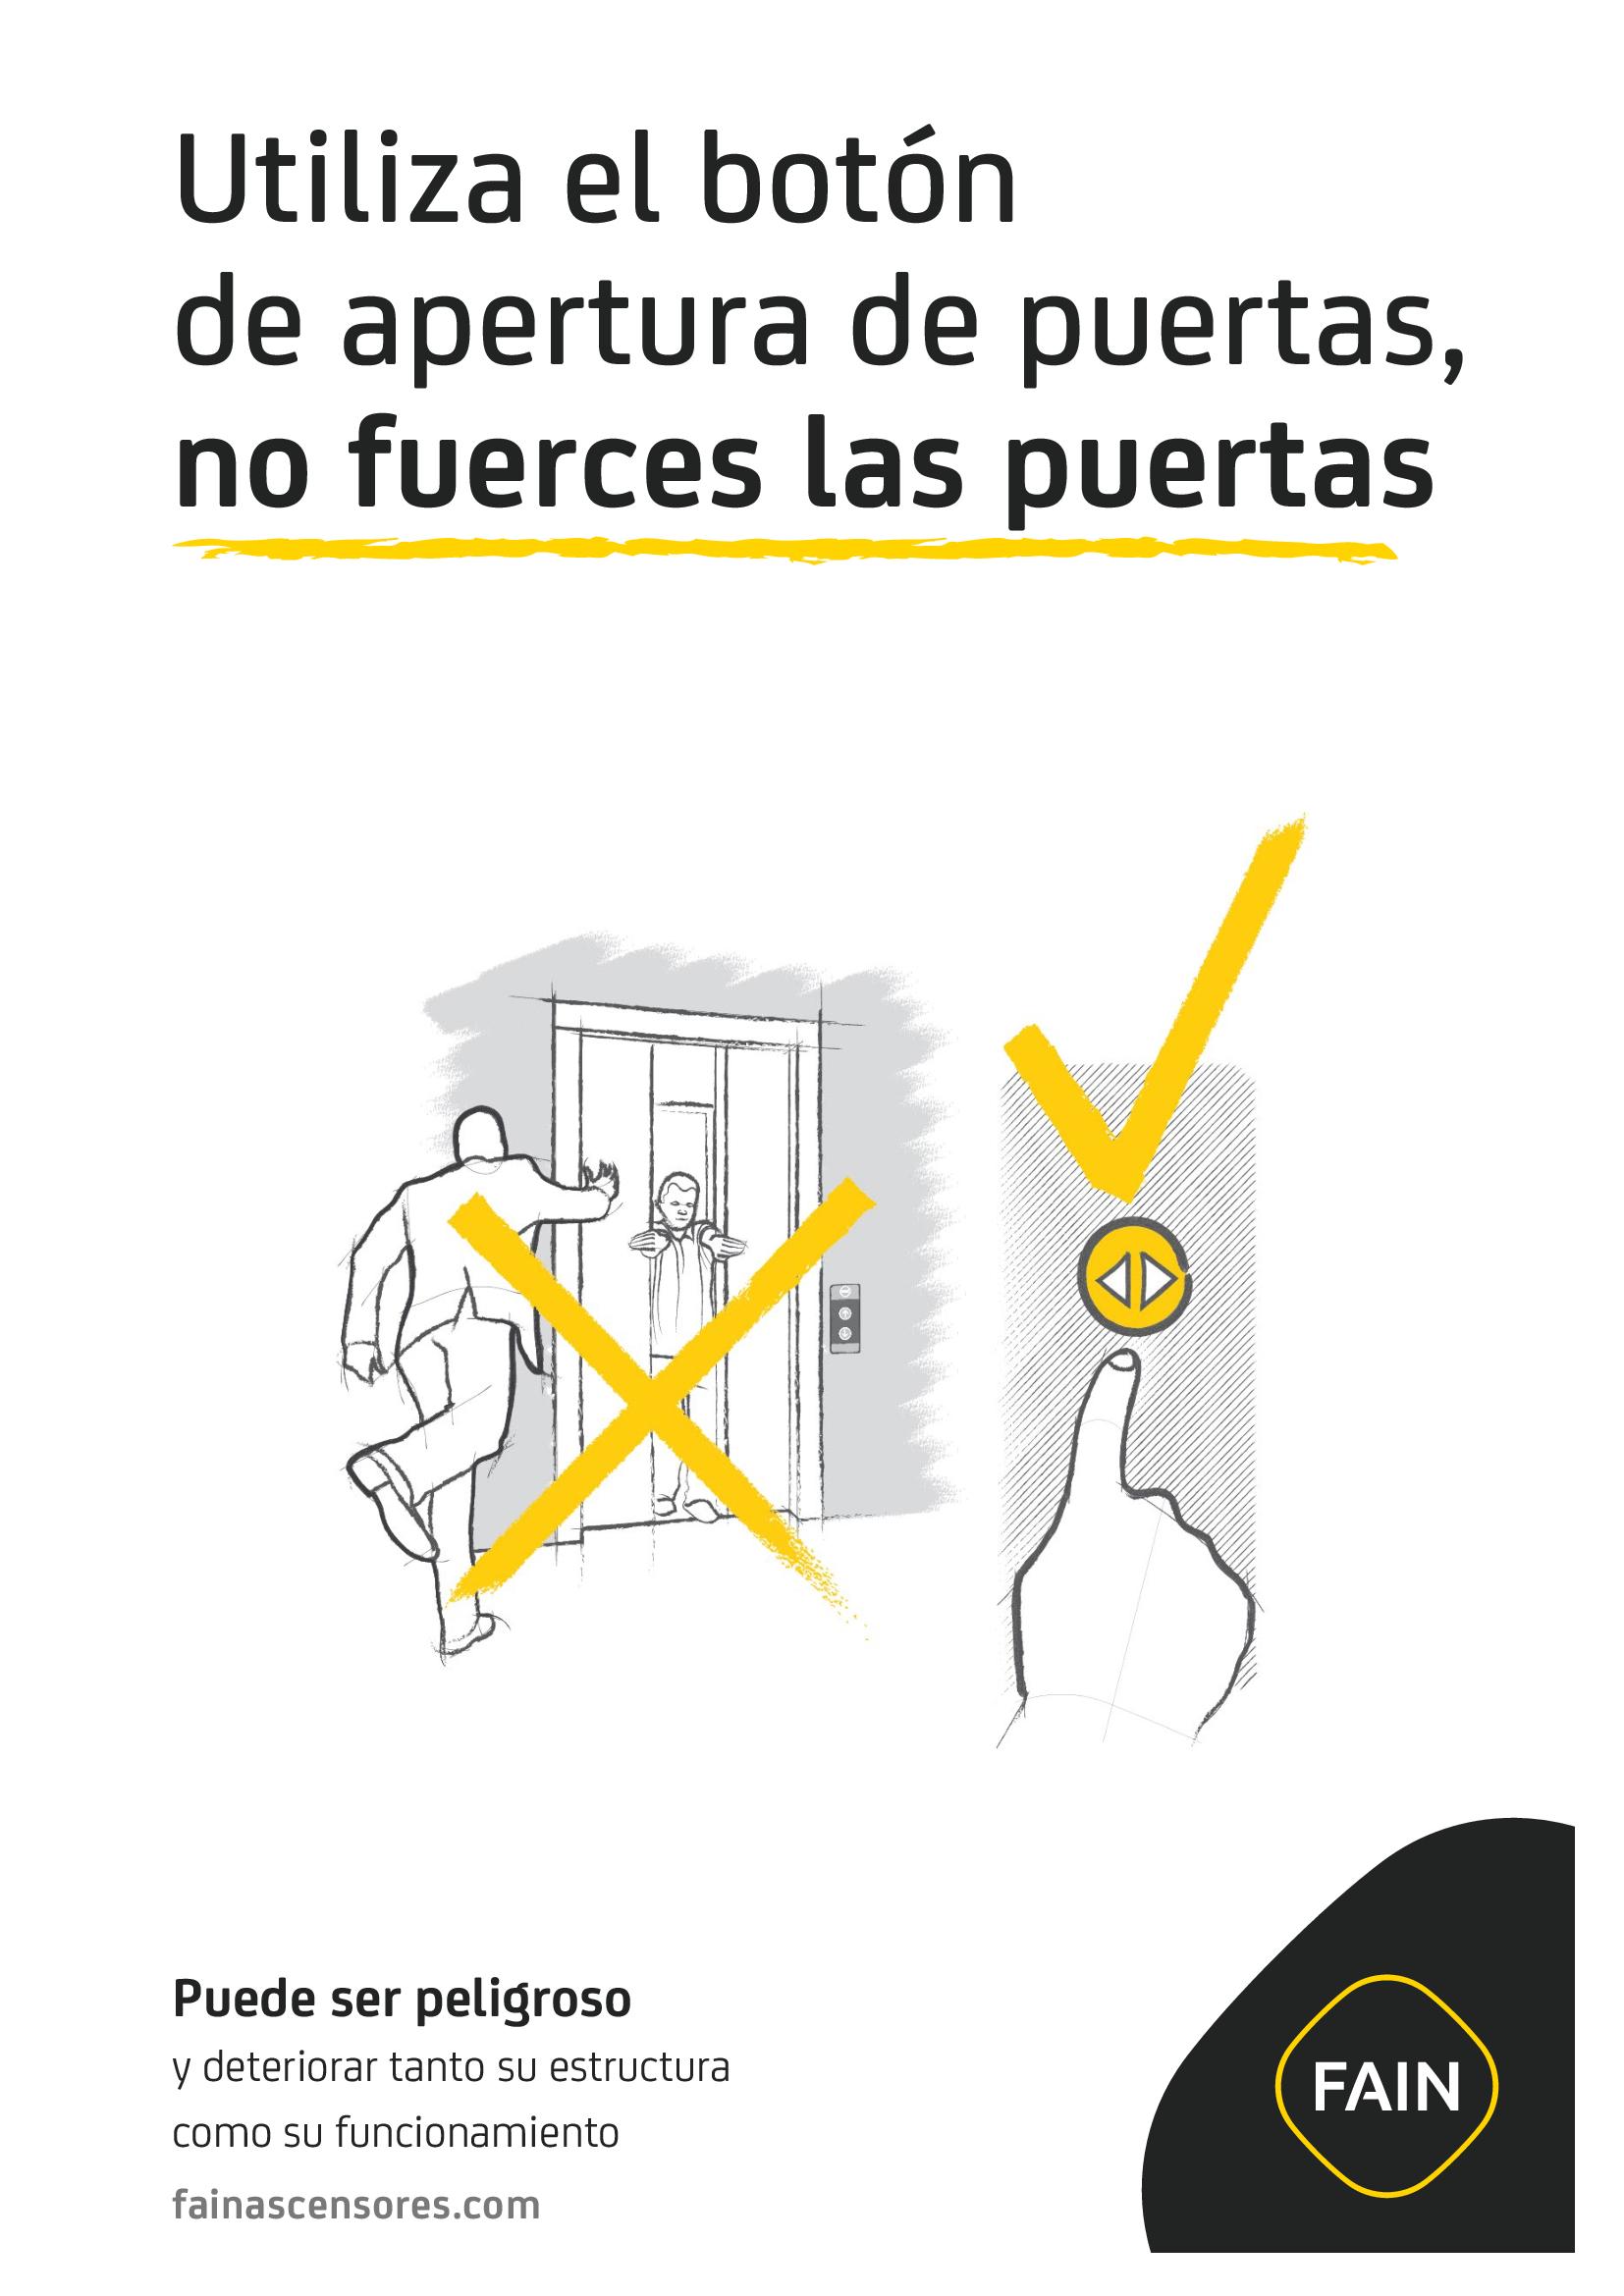 Cartel informativo para comunidades de vecinos: No fuerces las puertas